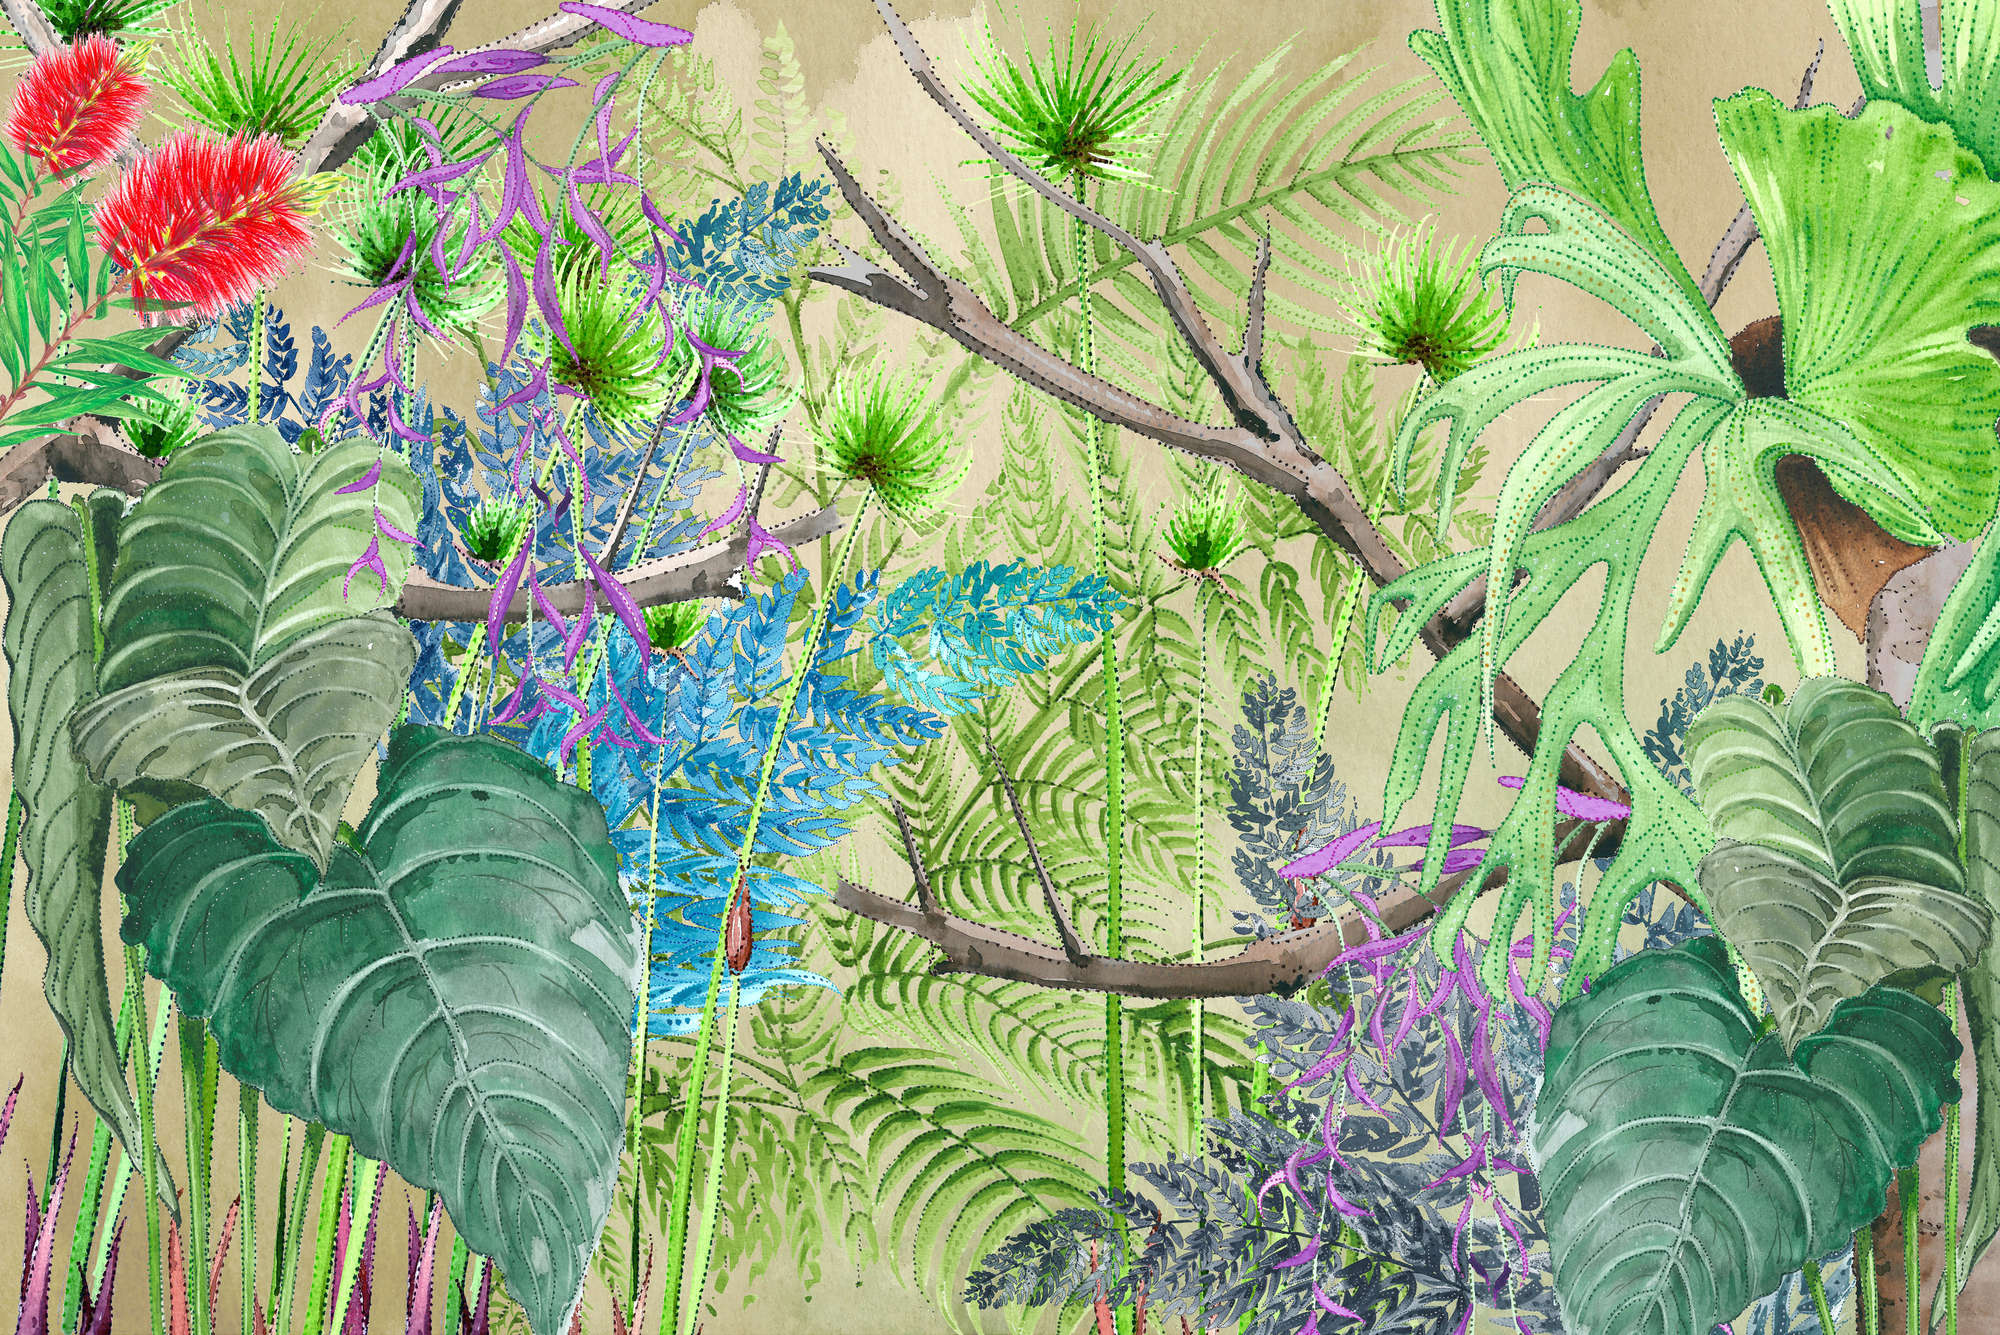             Papier peint panoramique jungle avec des fleurs en bleu et vert sur intissé structuré
        